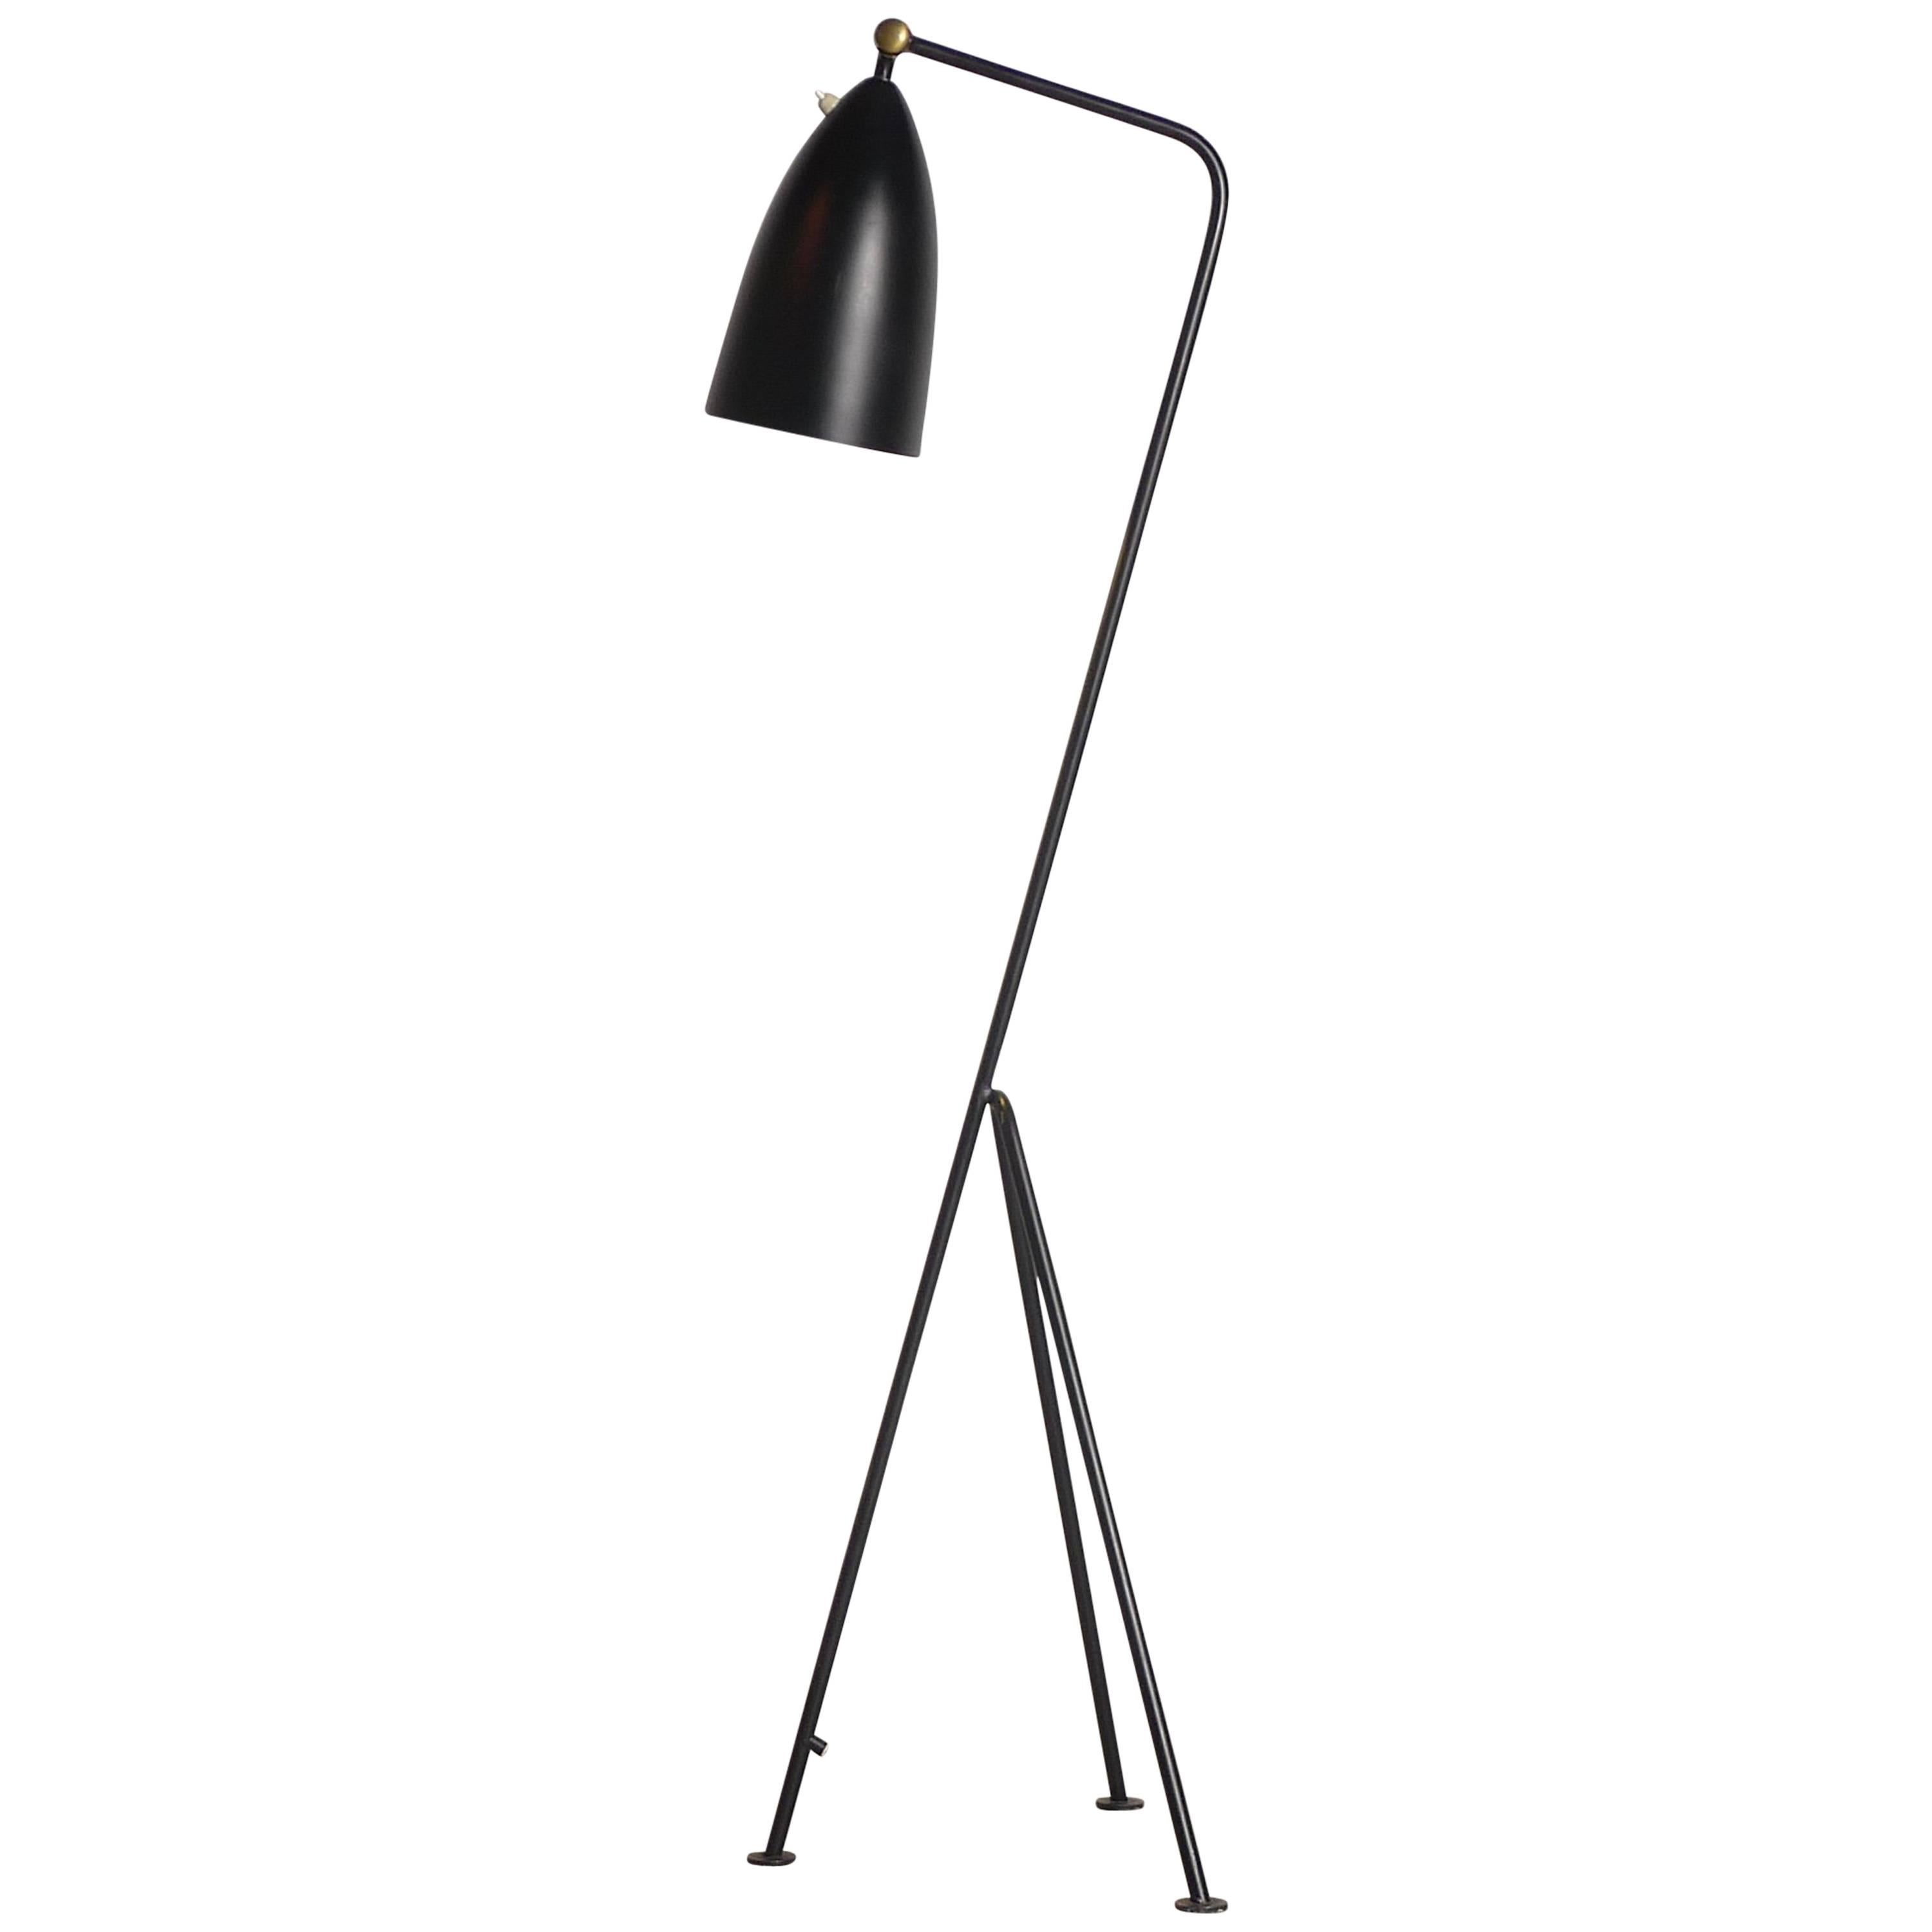 Greta Magnusson Grossman Grasshopper Lamp for Bergboms, Labelled by Maker